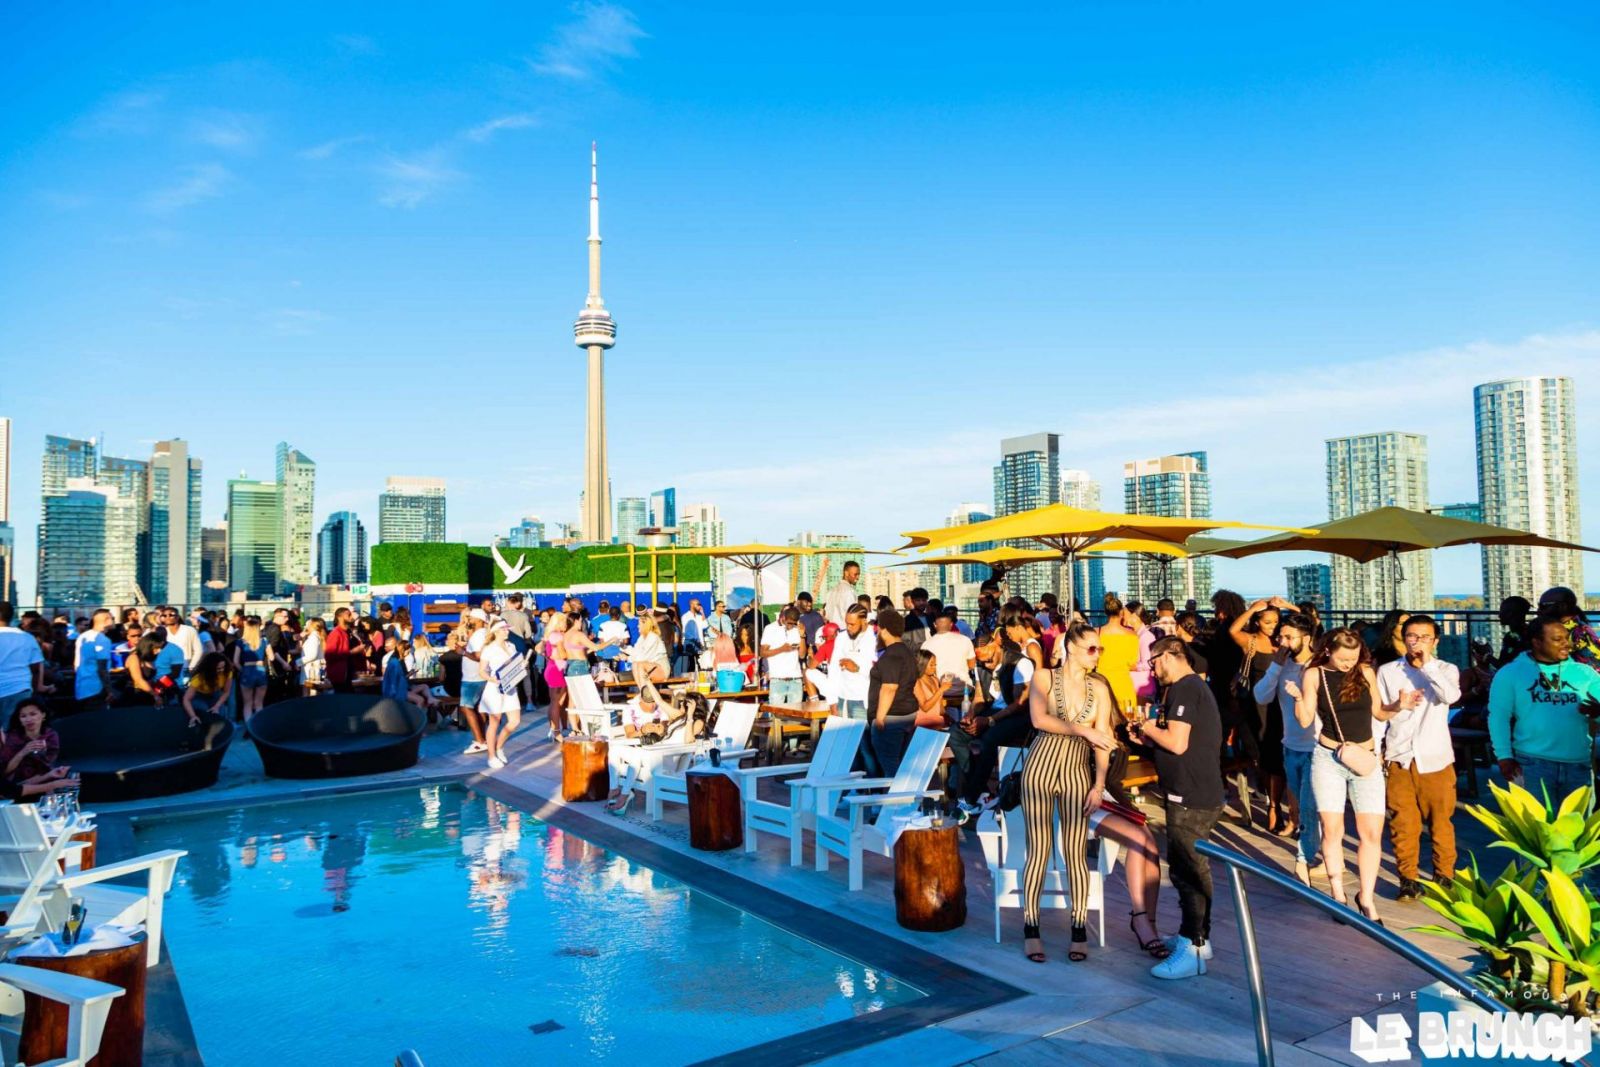 Restaurantes y bares en Toronto, se “pelean” trabajadores para su reapertura de verano  